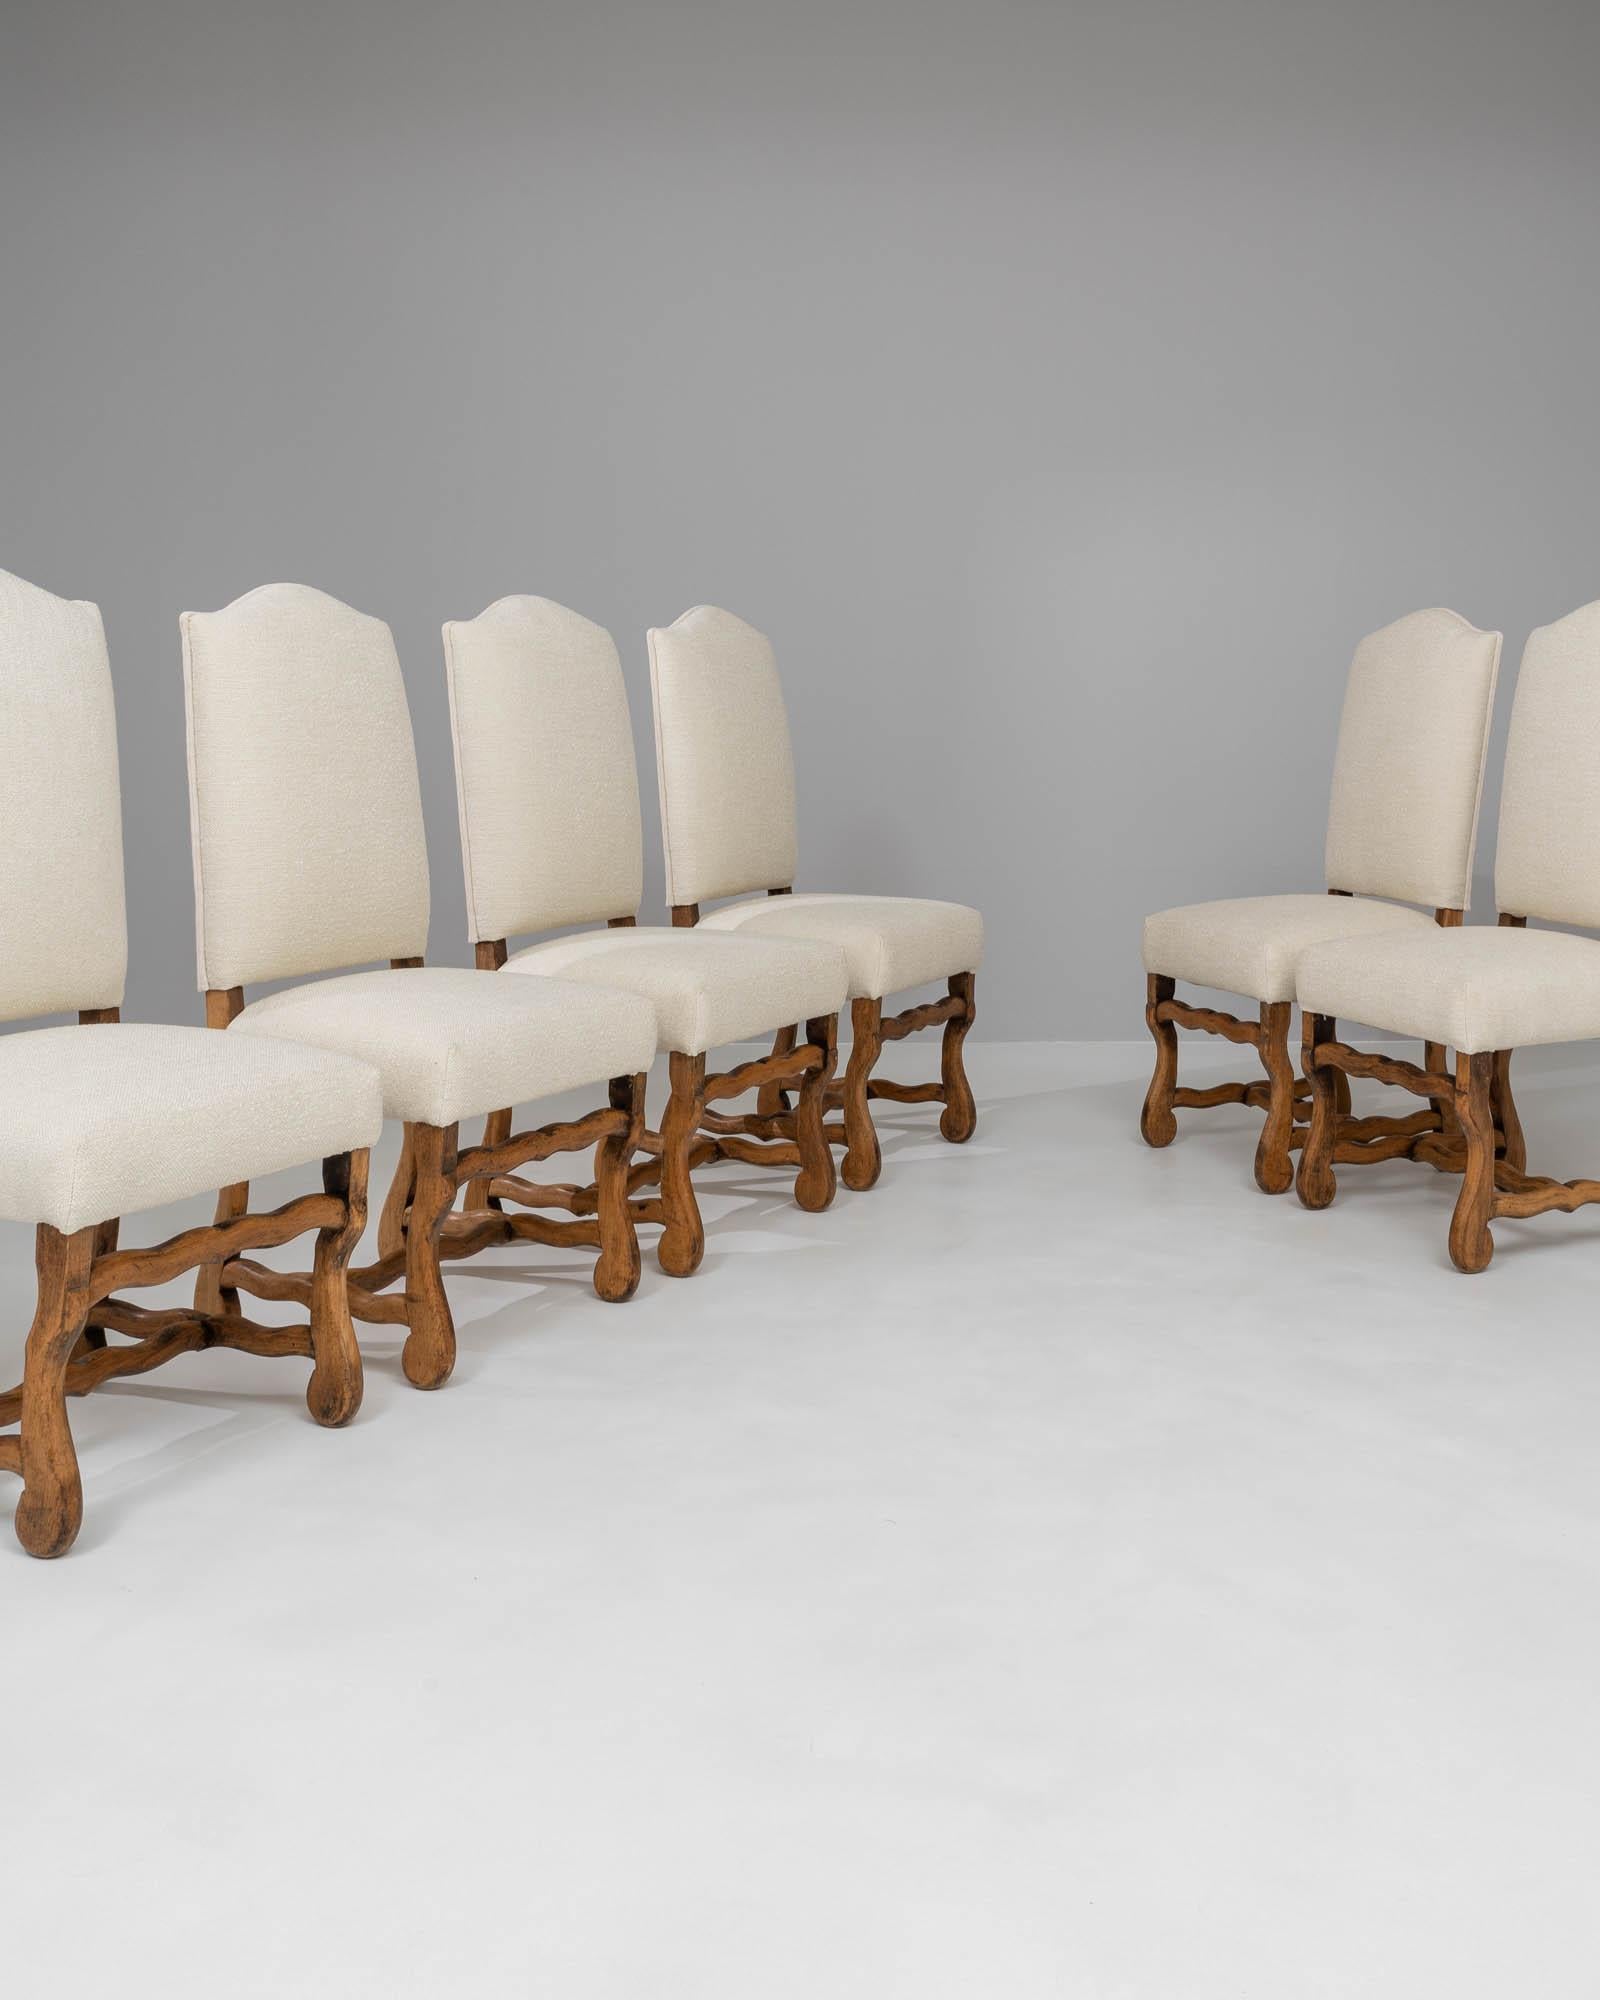 Voici l'ensemble exquis de six chaises de salle à manger belges tapissées du 20e siècle, un témoignage d'élégance intemporelle et de confort inégalé. Ces chaises présentent un design classique qui dégage une atmosphère chaleureuse et accueillante,